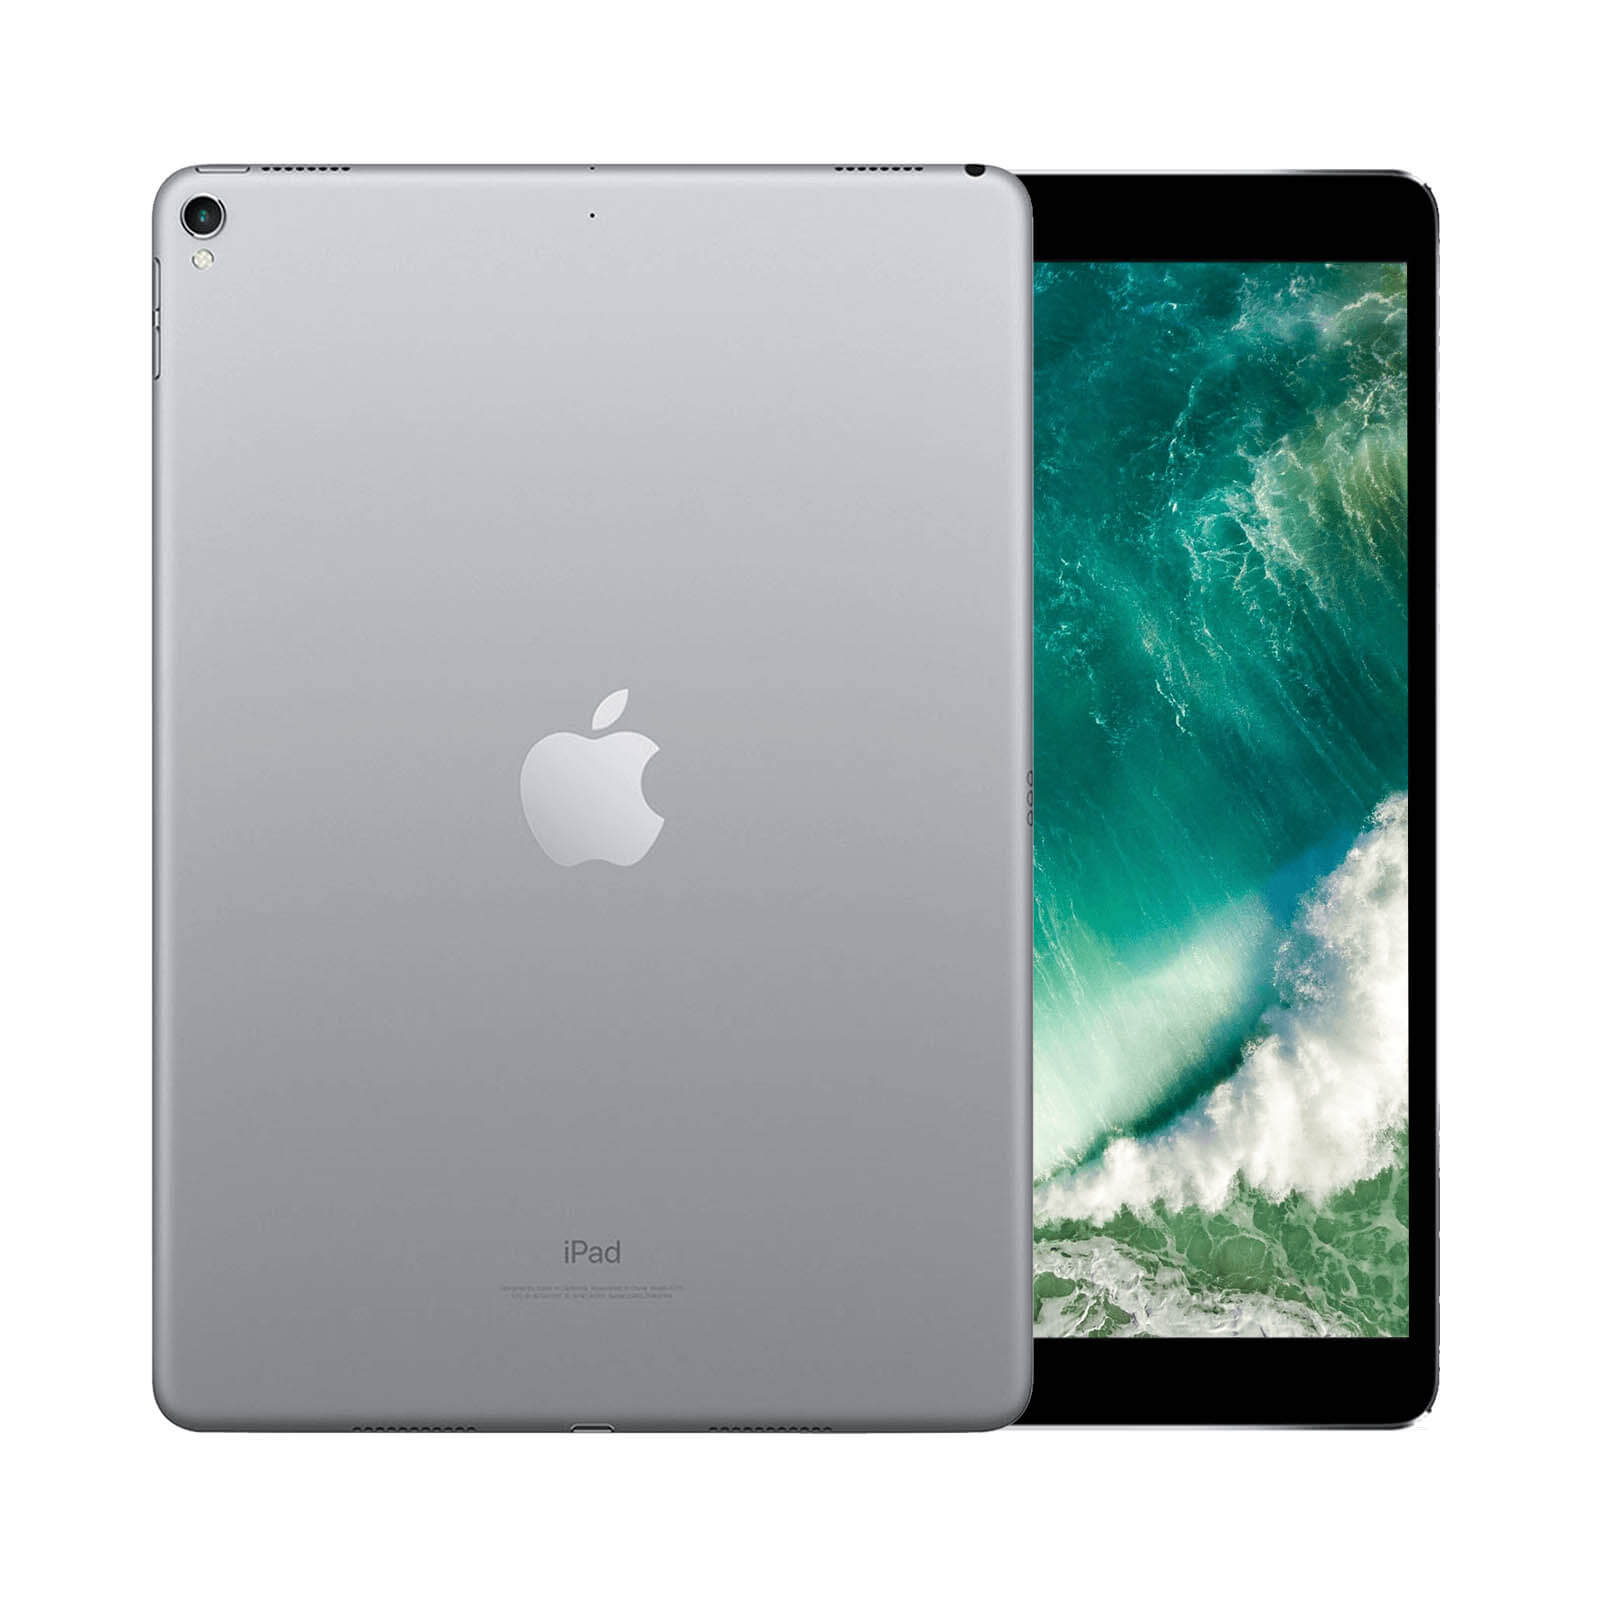 iPad Pro 10.5 Inch 256GB Gold Good - WiFi